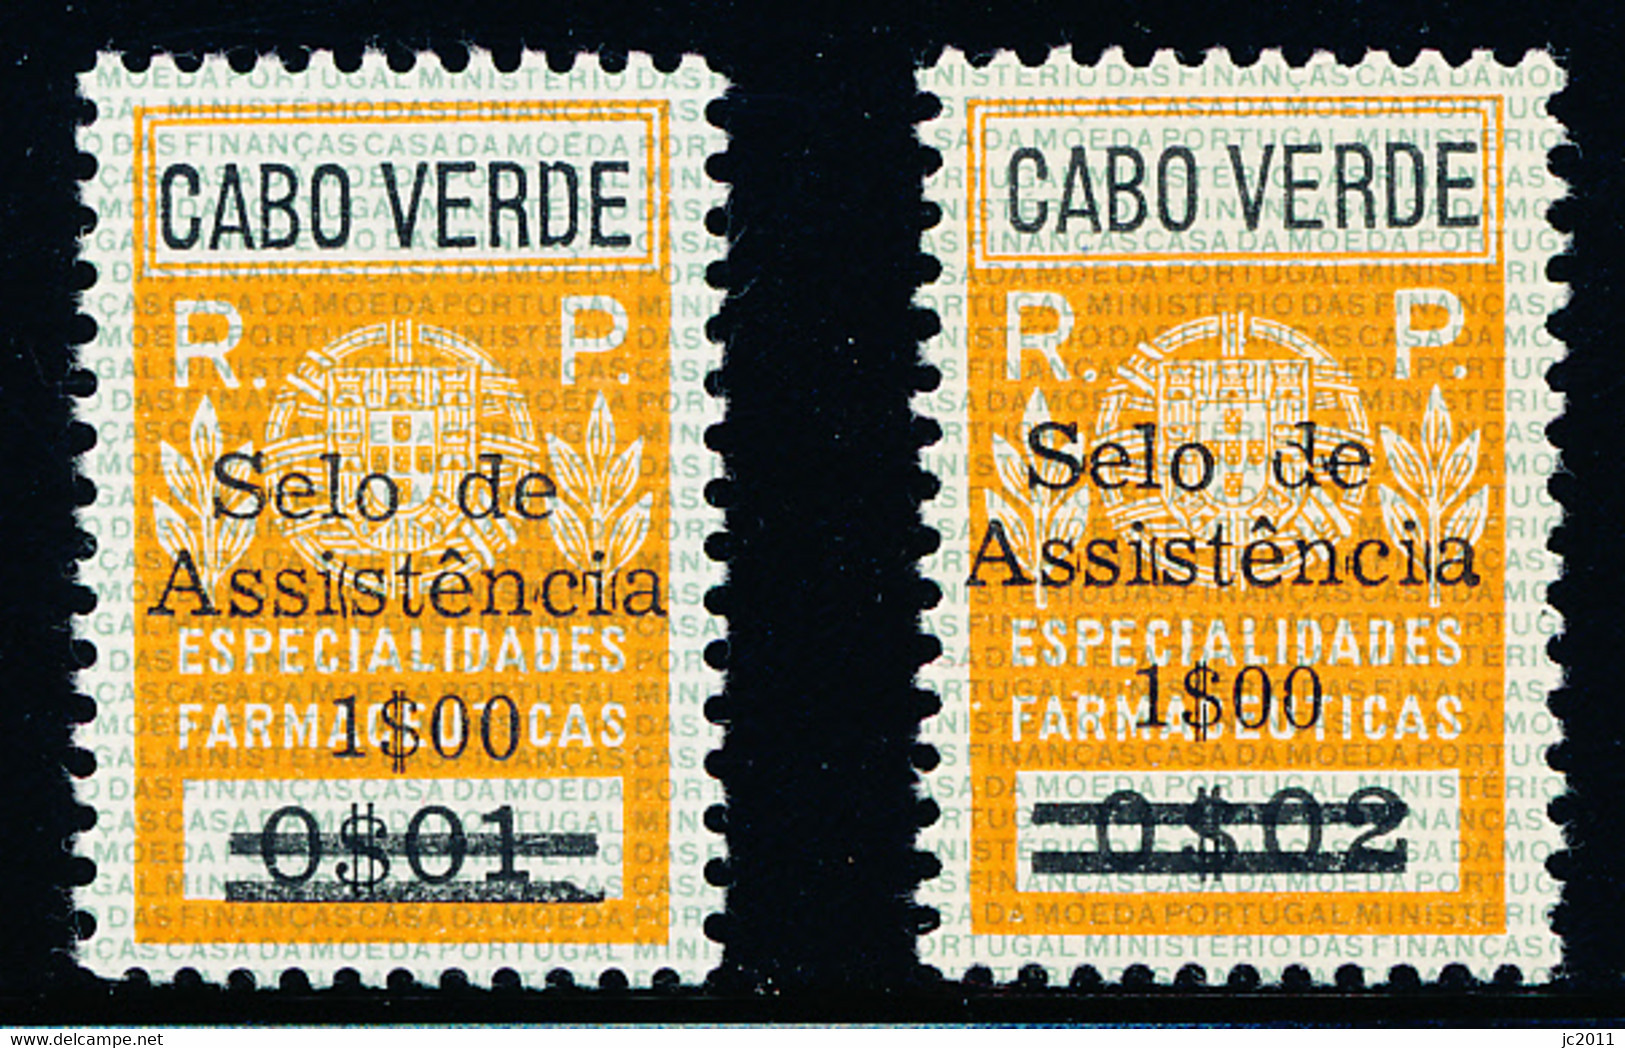 Cabo Verde - 1967 - Charaty Tax / Especialidades Farmacêuticas - MNH - Kaapverdische Eilanden